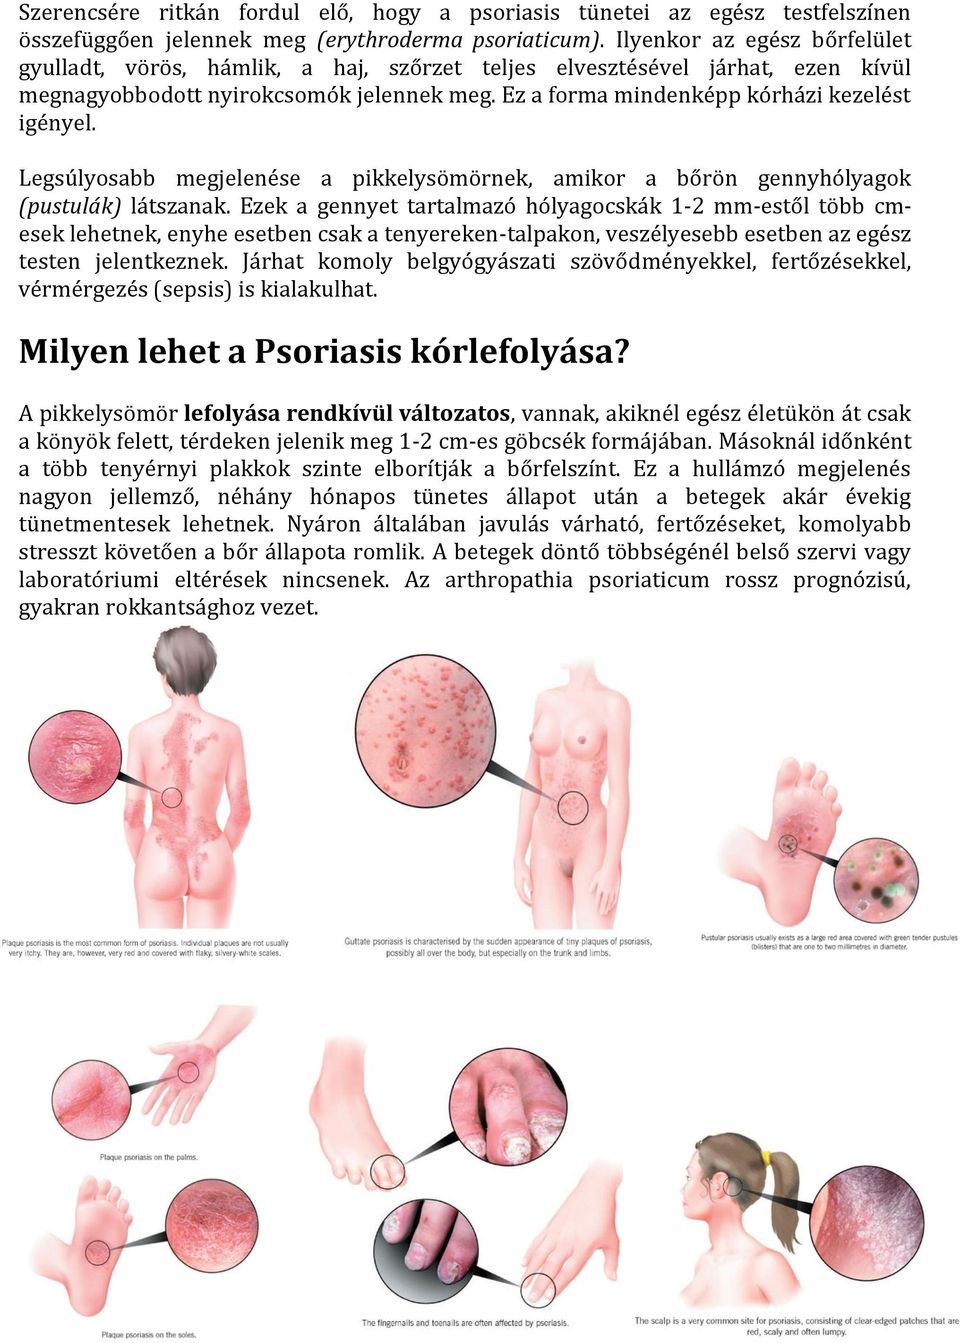 Hungary Harkani pikkelysömör kezelés reviews psoriasis nemi szerven